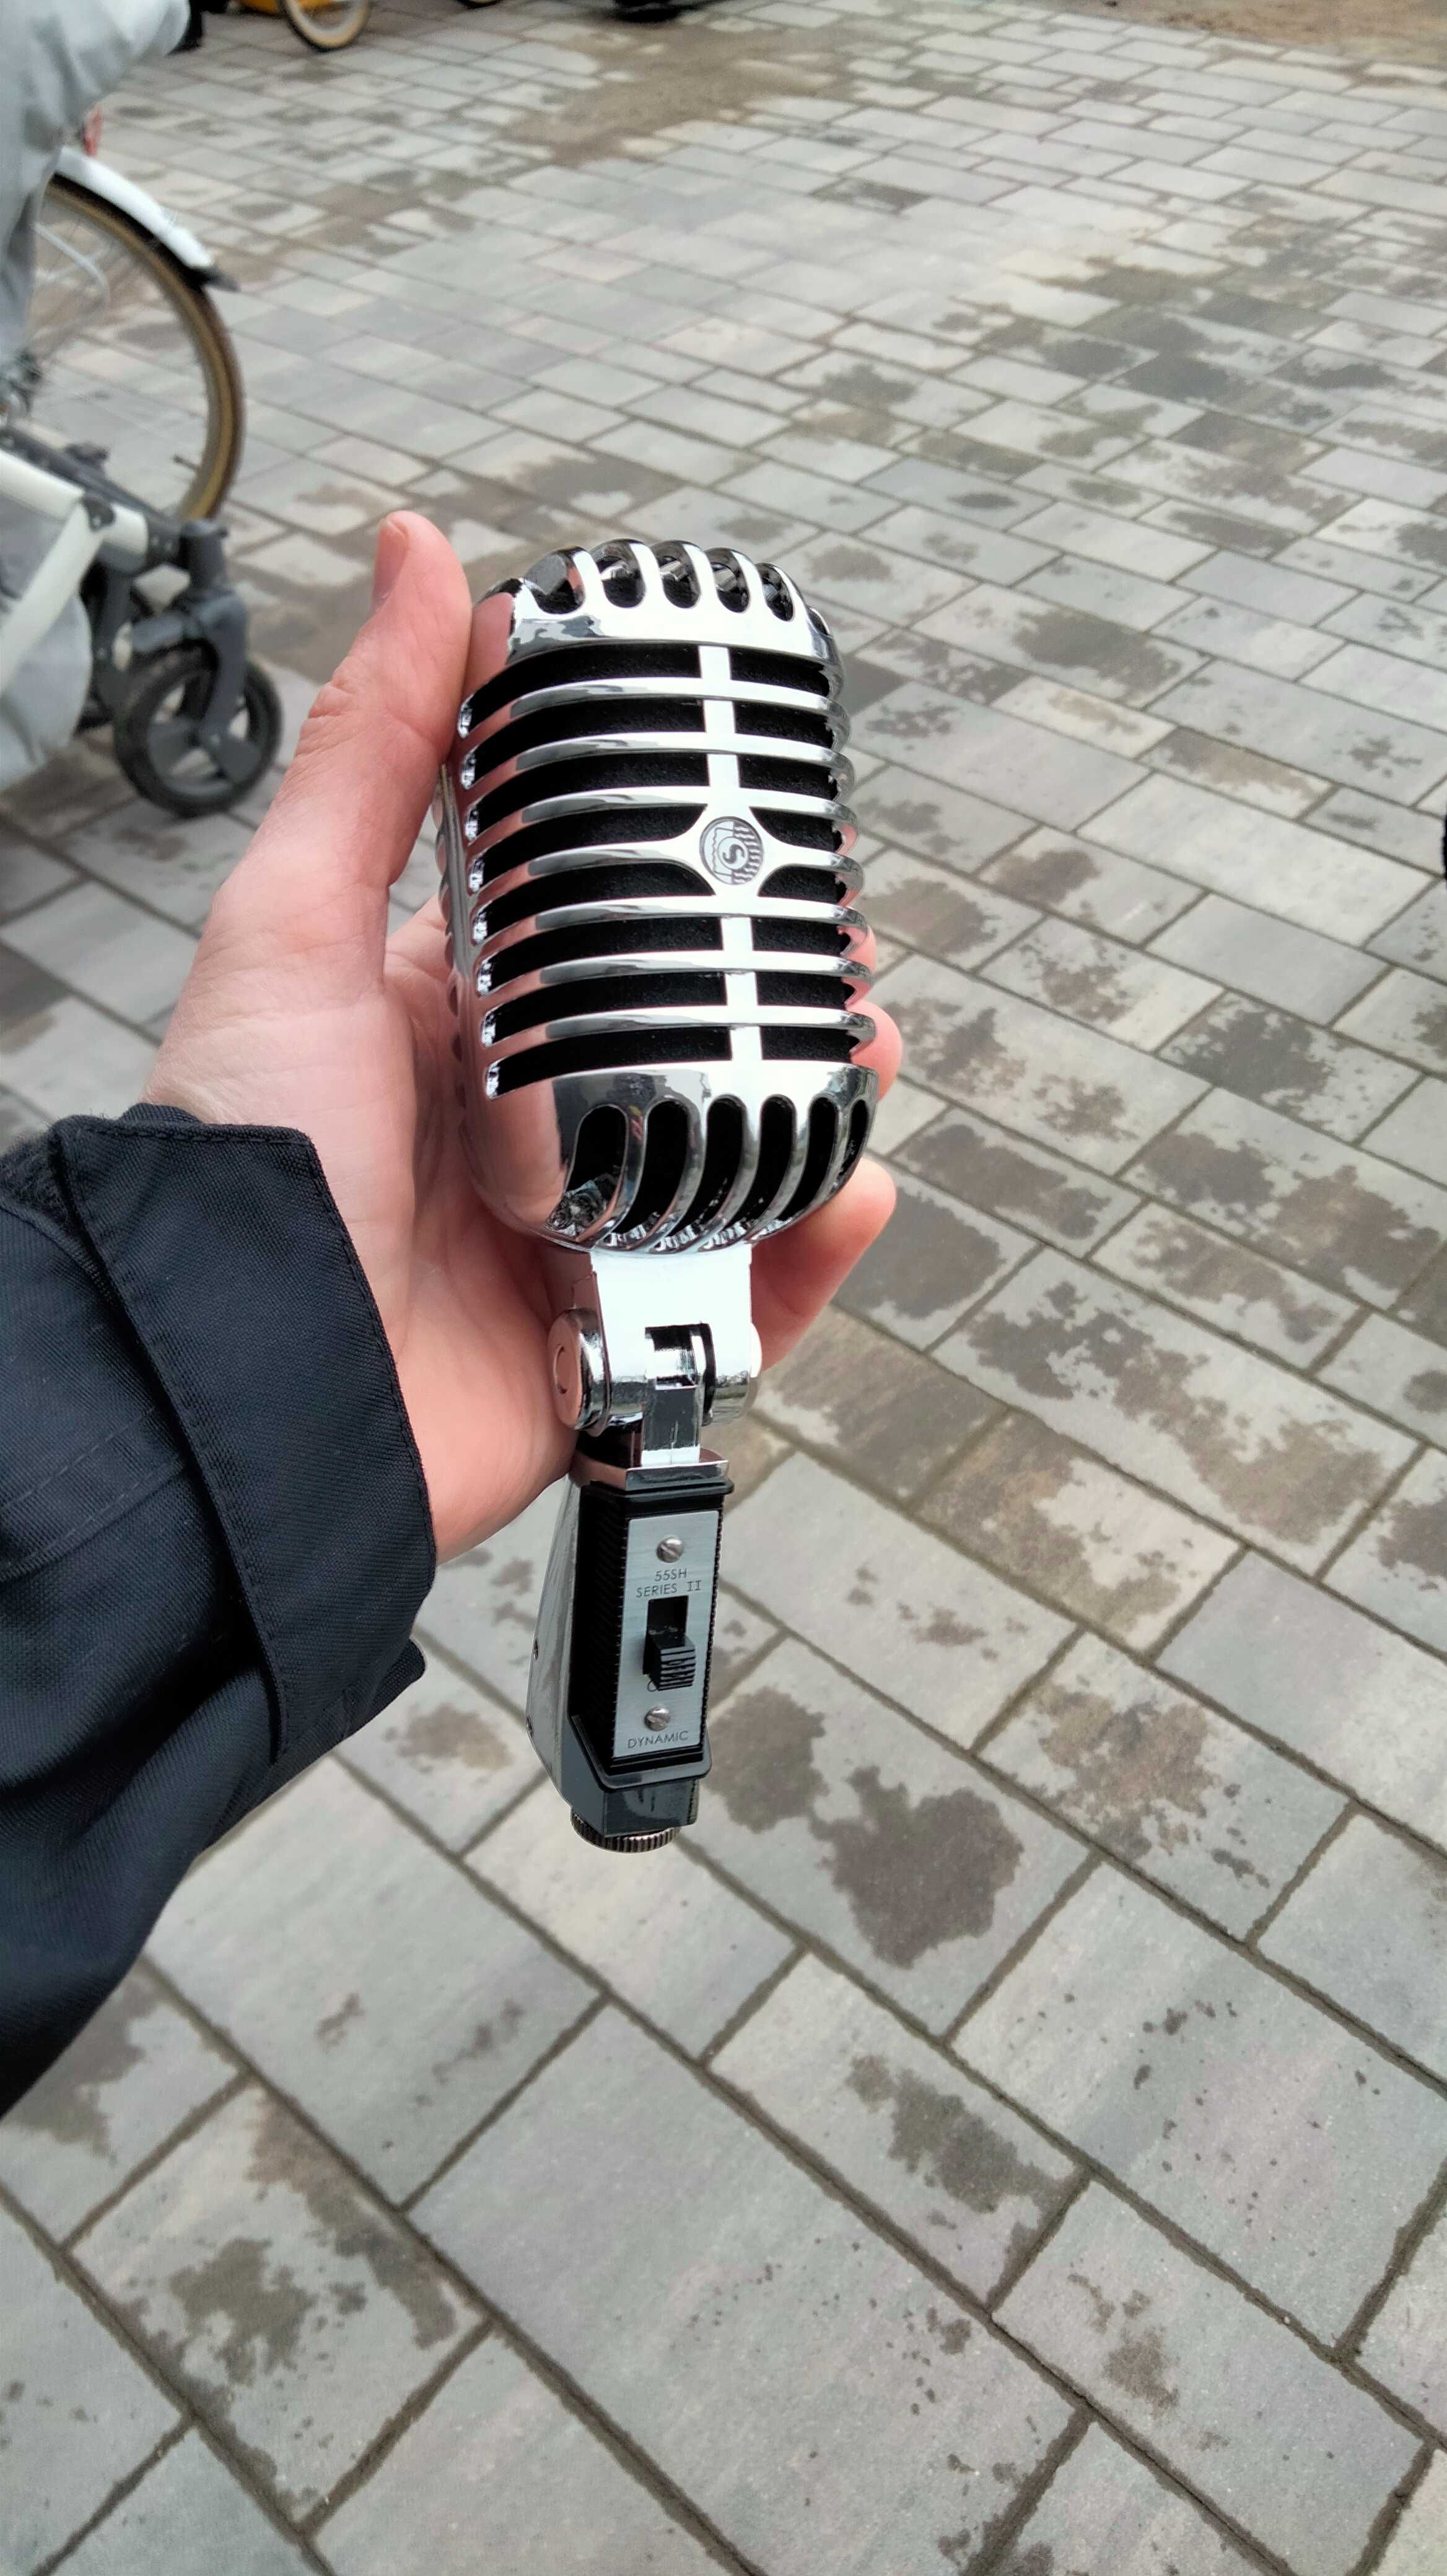 Mikrofon bezprzewodowy Power Dynamics i mikrofon vintage retro old